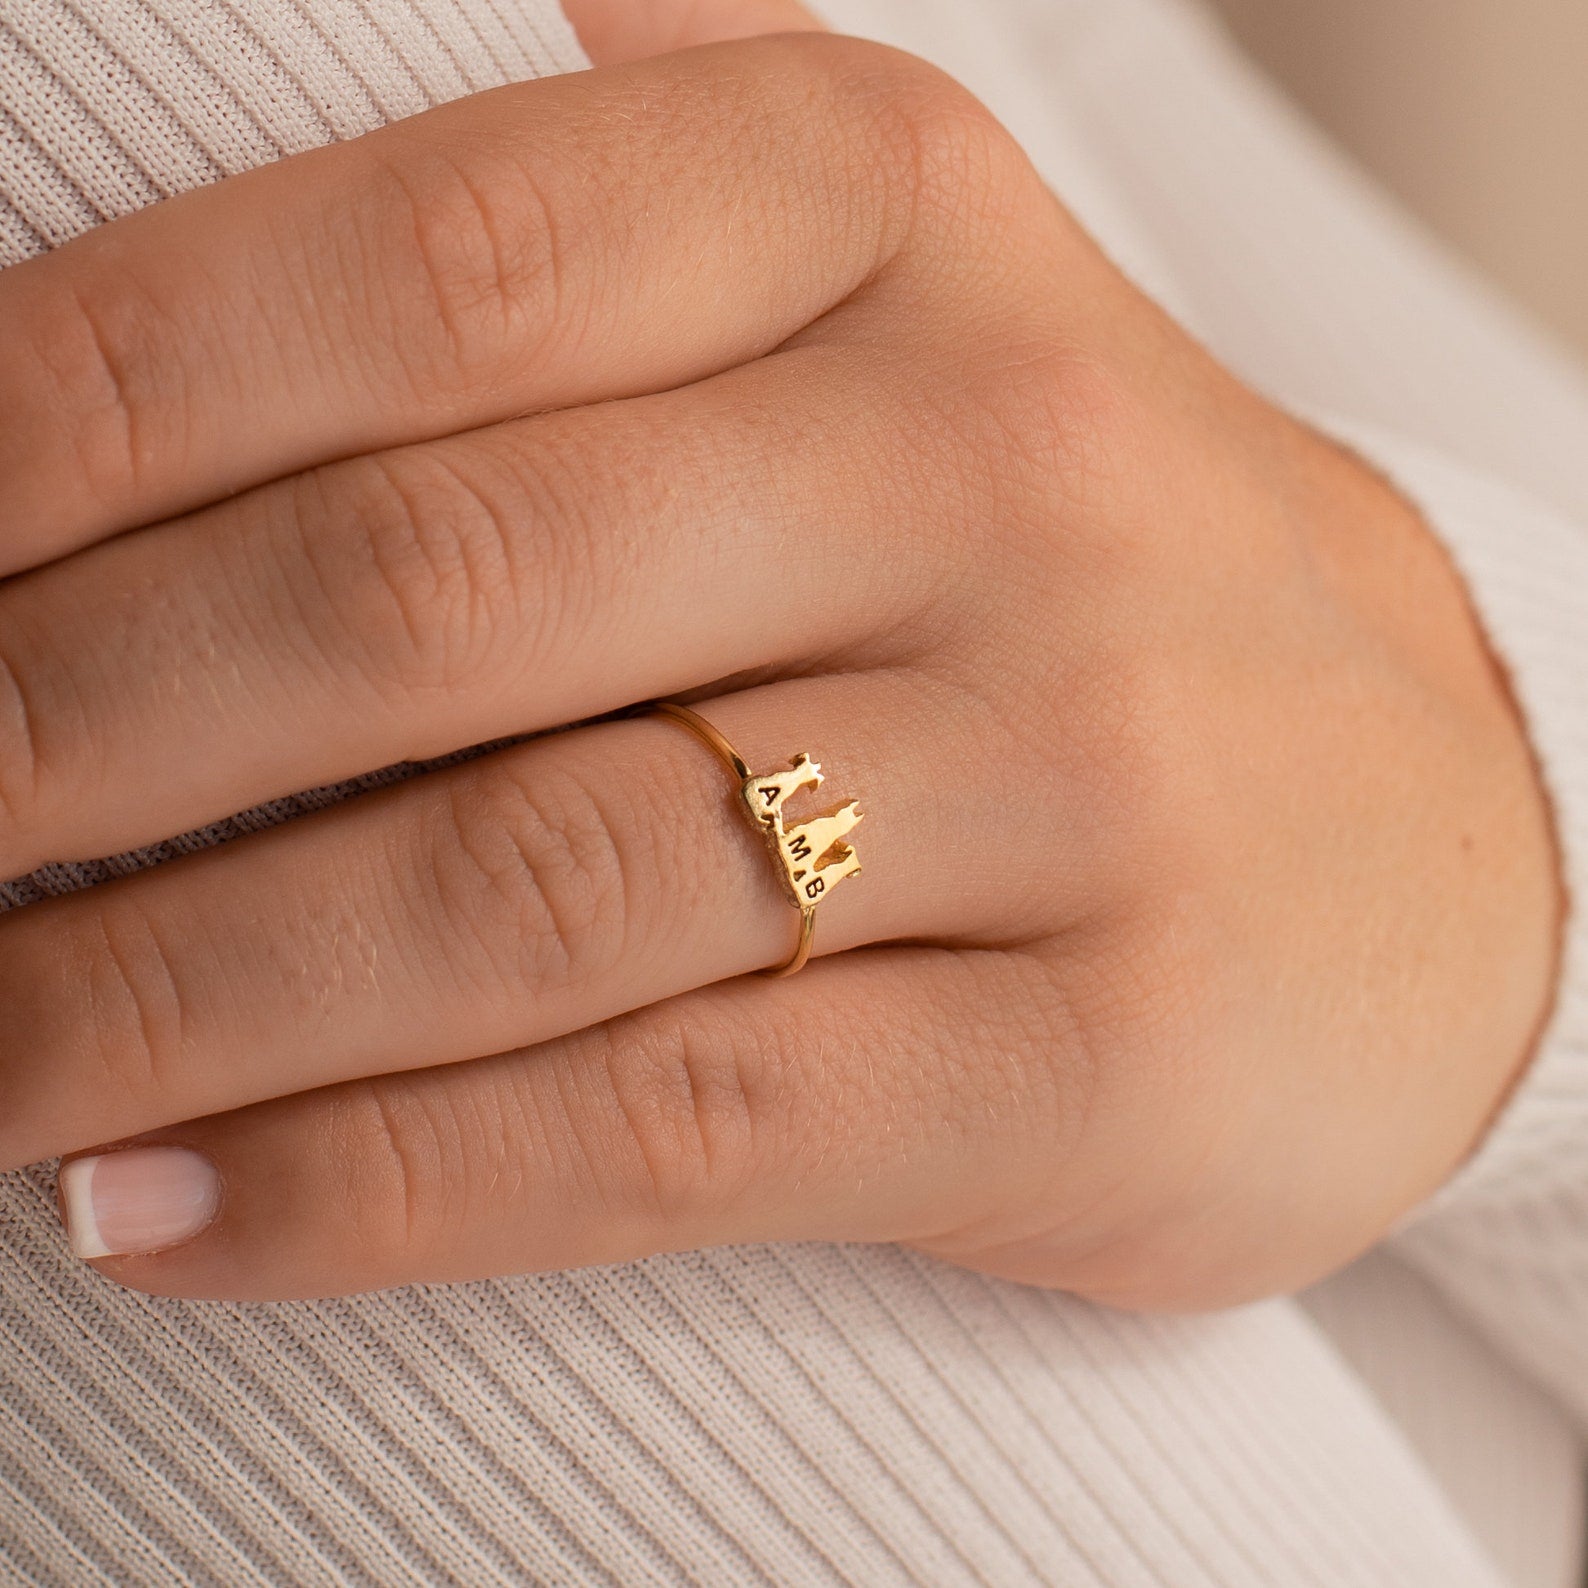 24kt Gold Plated Dubai Ring African Turkish Arab Big Ring Indian Statement  Ring | eBay